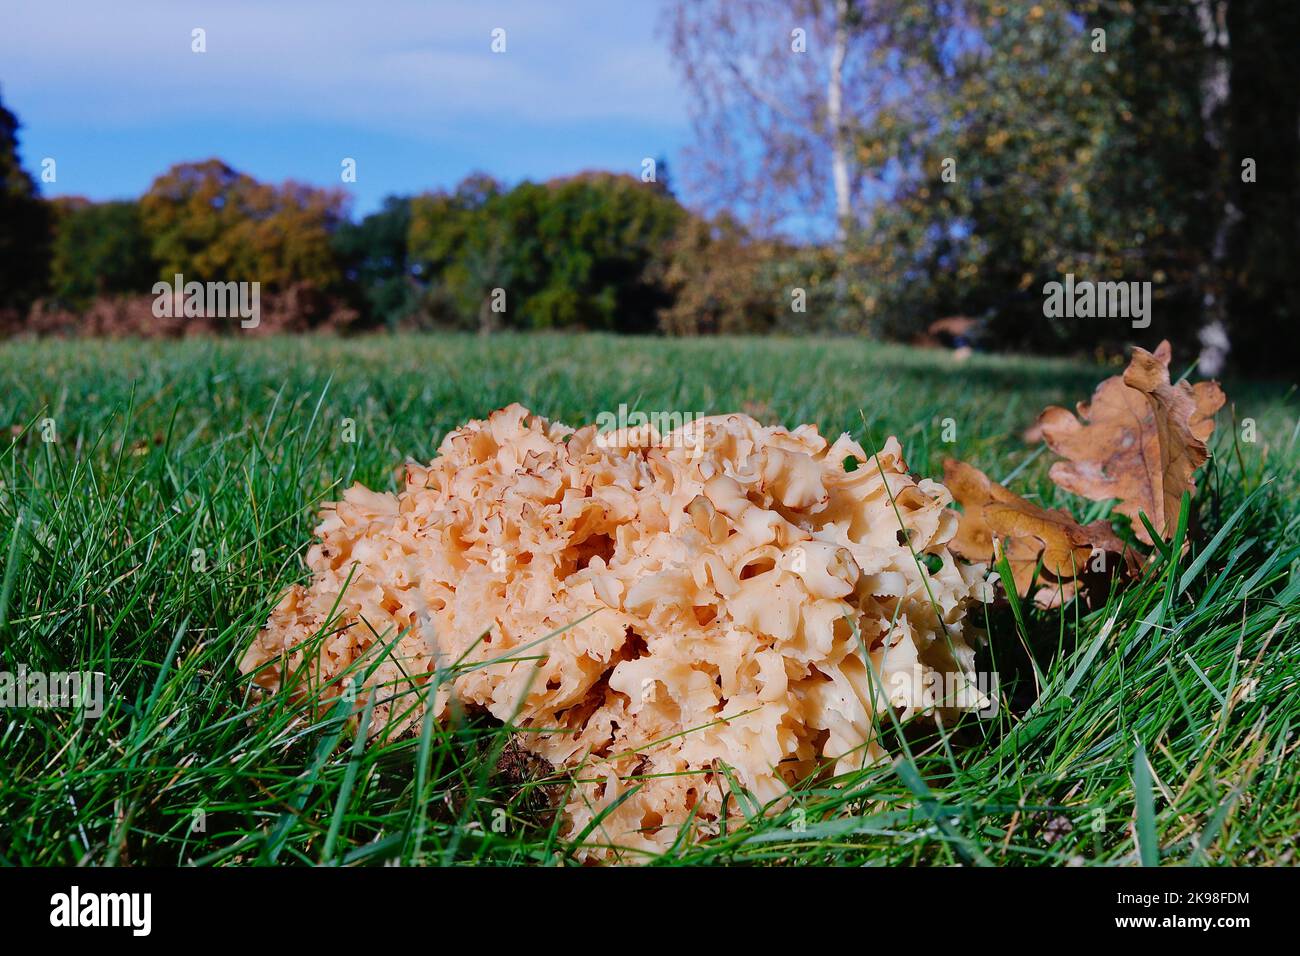 Le champignon sauvage comestible, le champignon du chou-fleur, Sparassis crispa, pousse en herbe courte à côté de son arbre hôte Banque D'Images